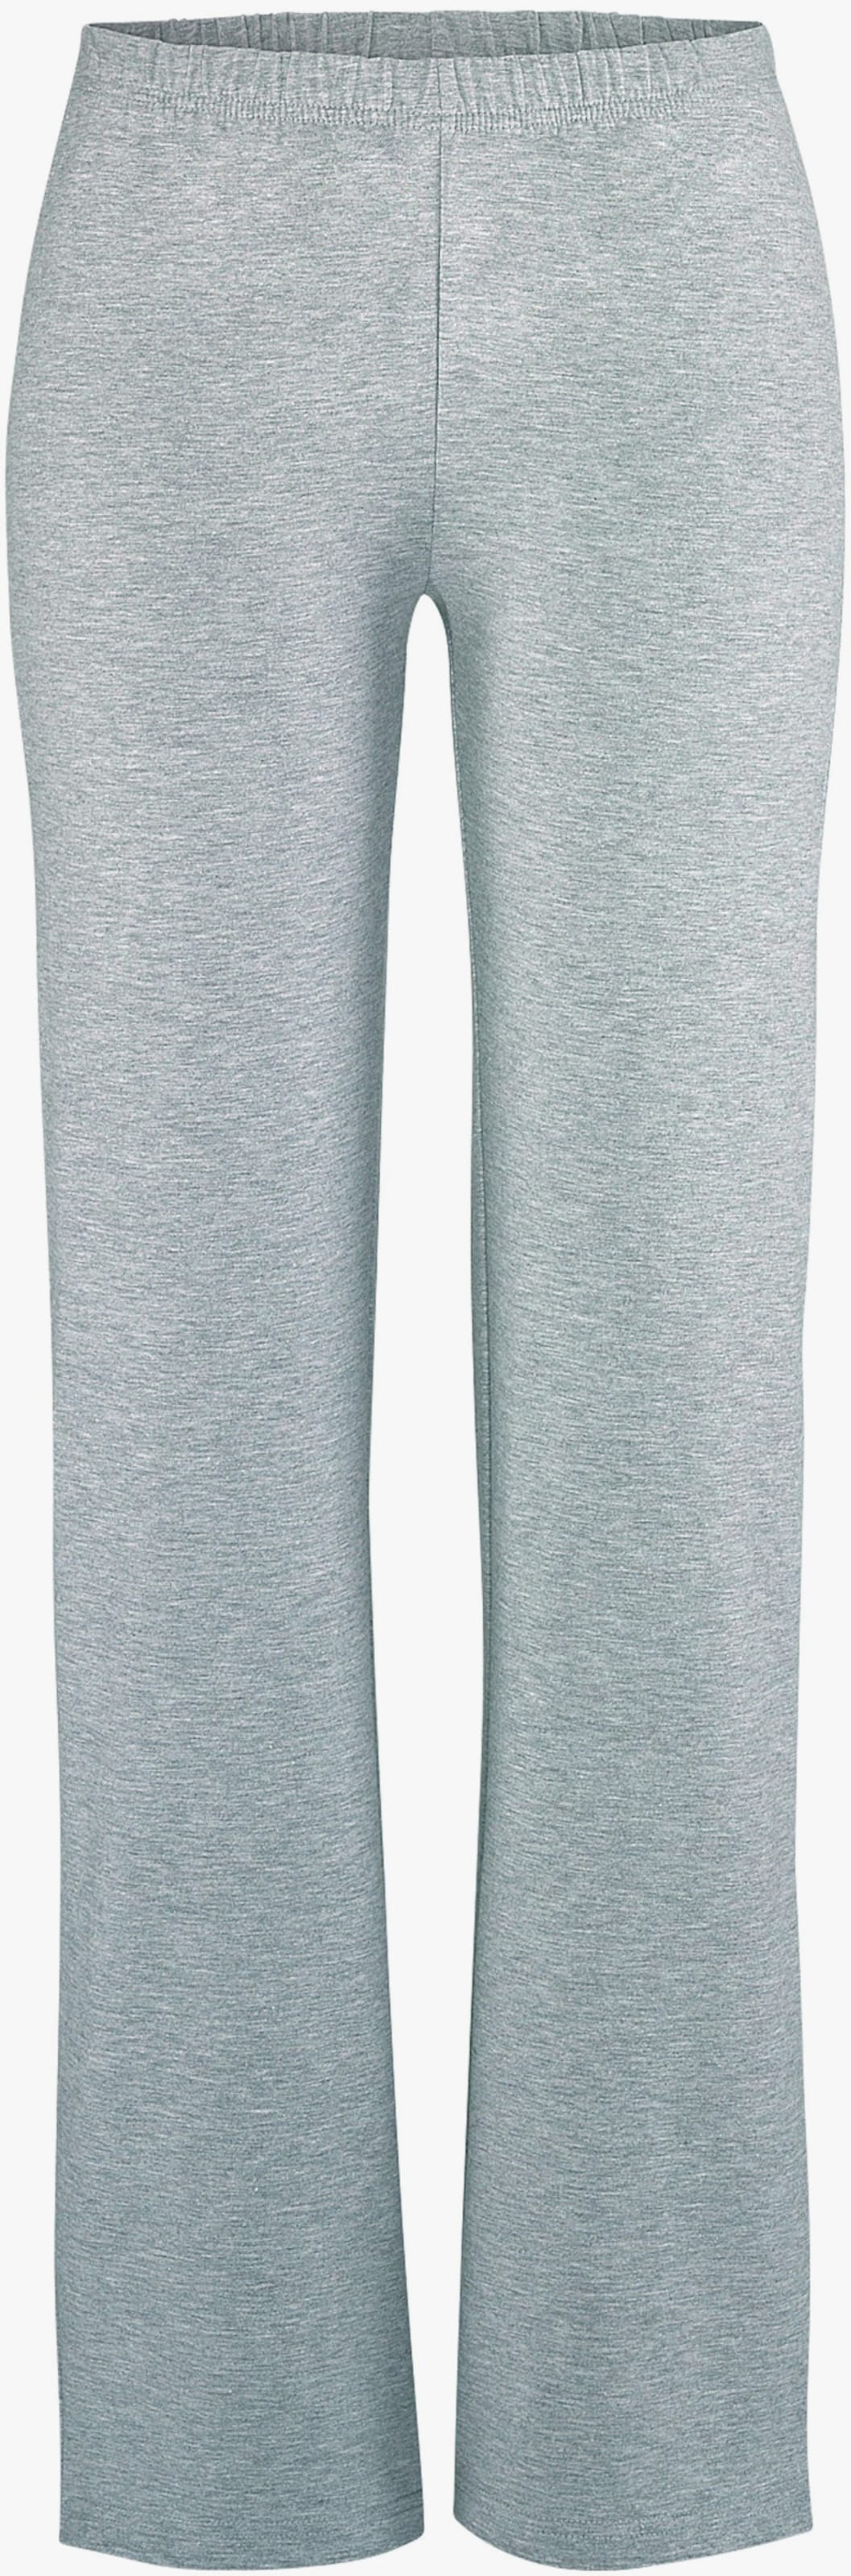 Panty - 1x gris clair chiné, 1x noir